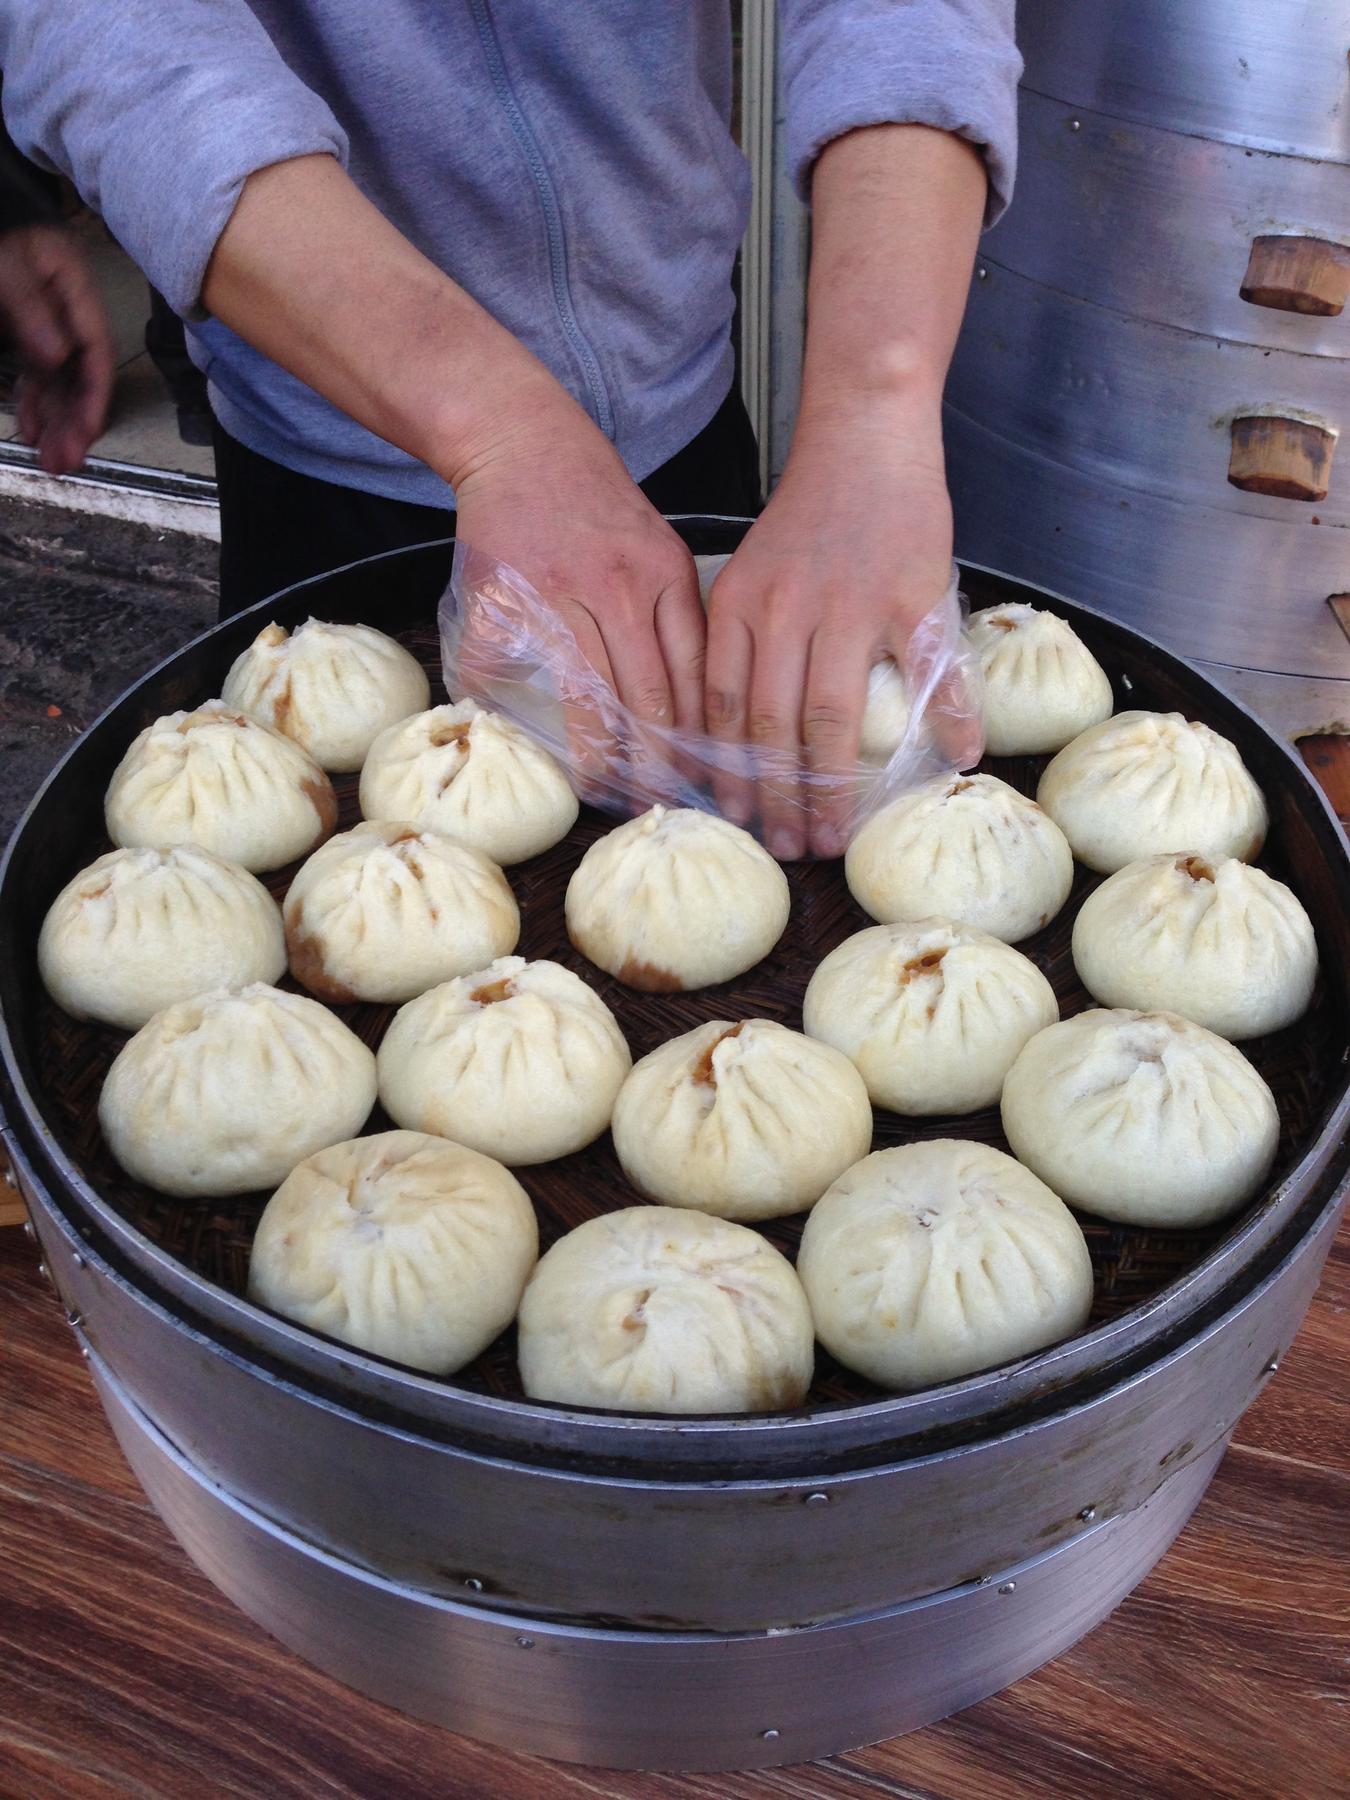 Chinese dumplings on steamer for sale